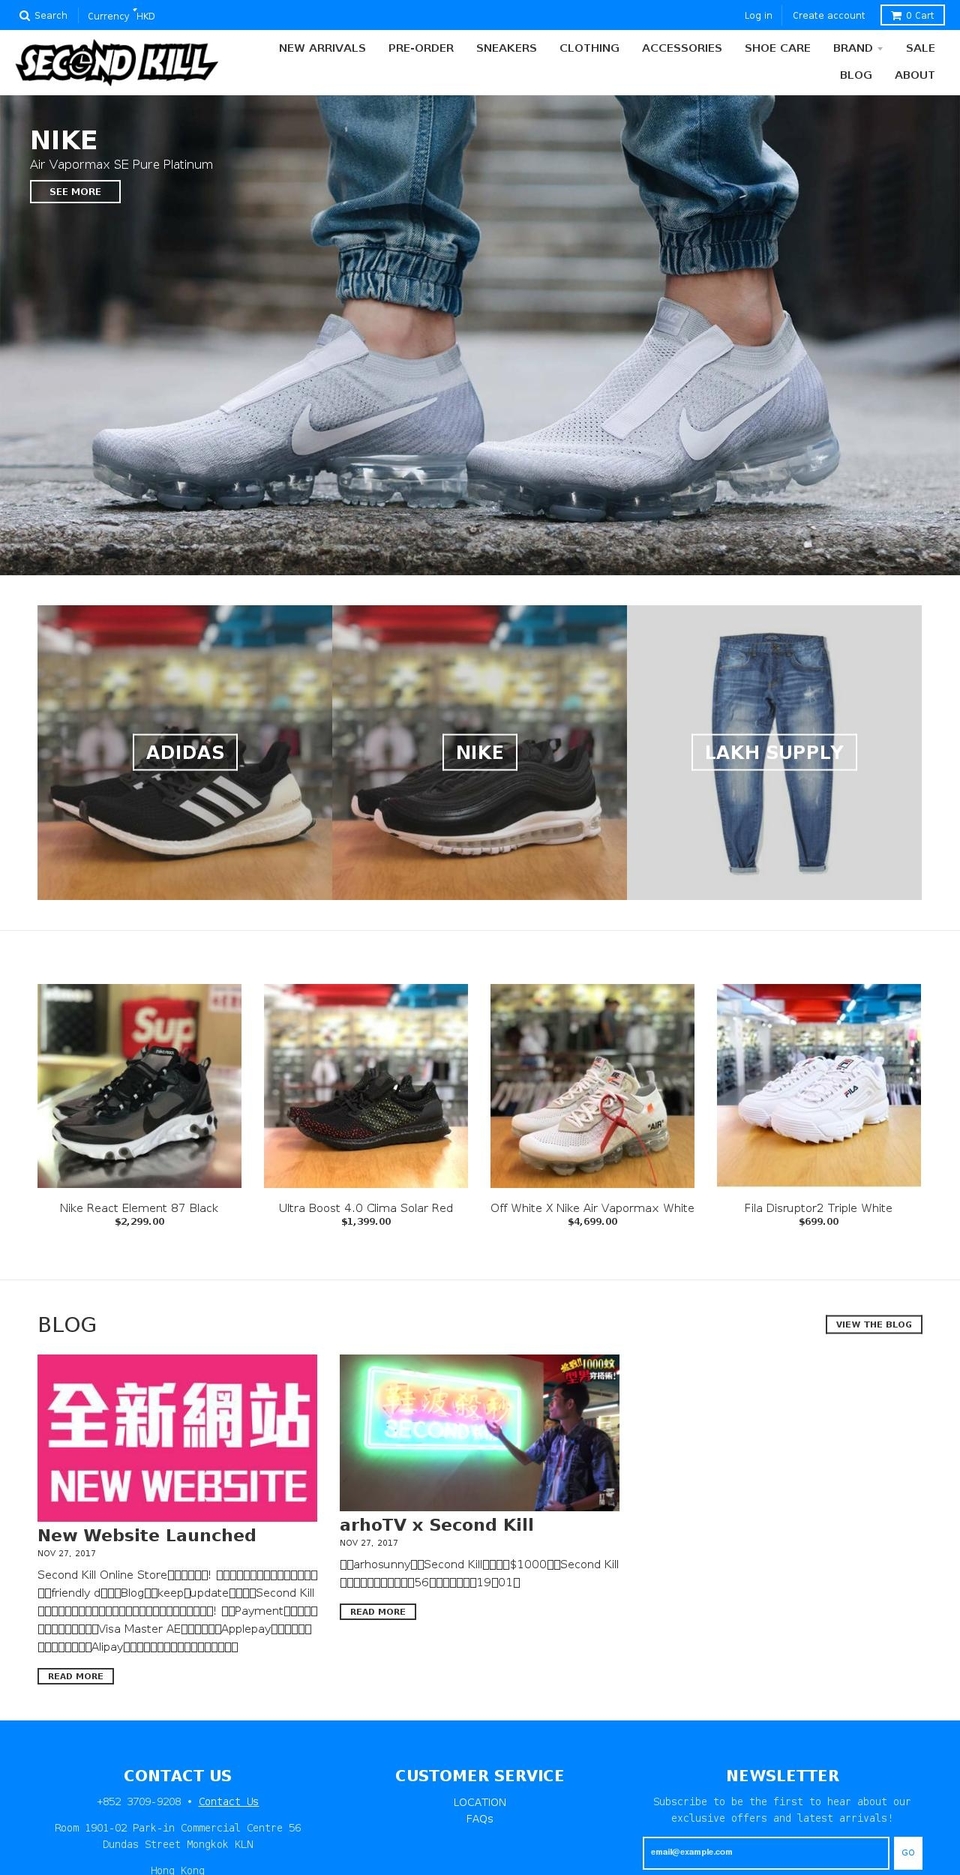 secondkill.com.hk shopify website screenshot